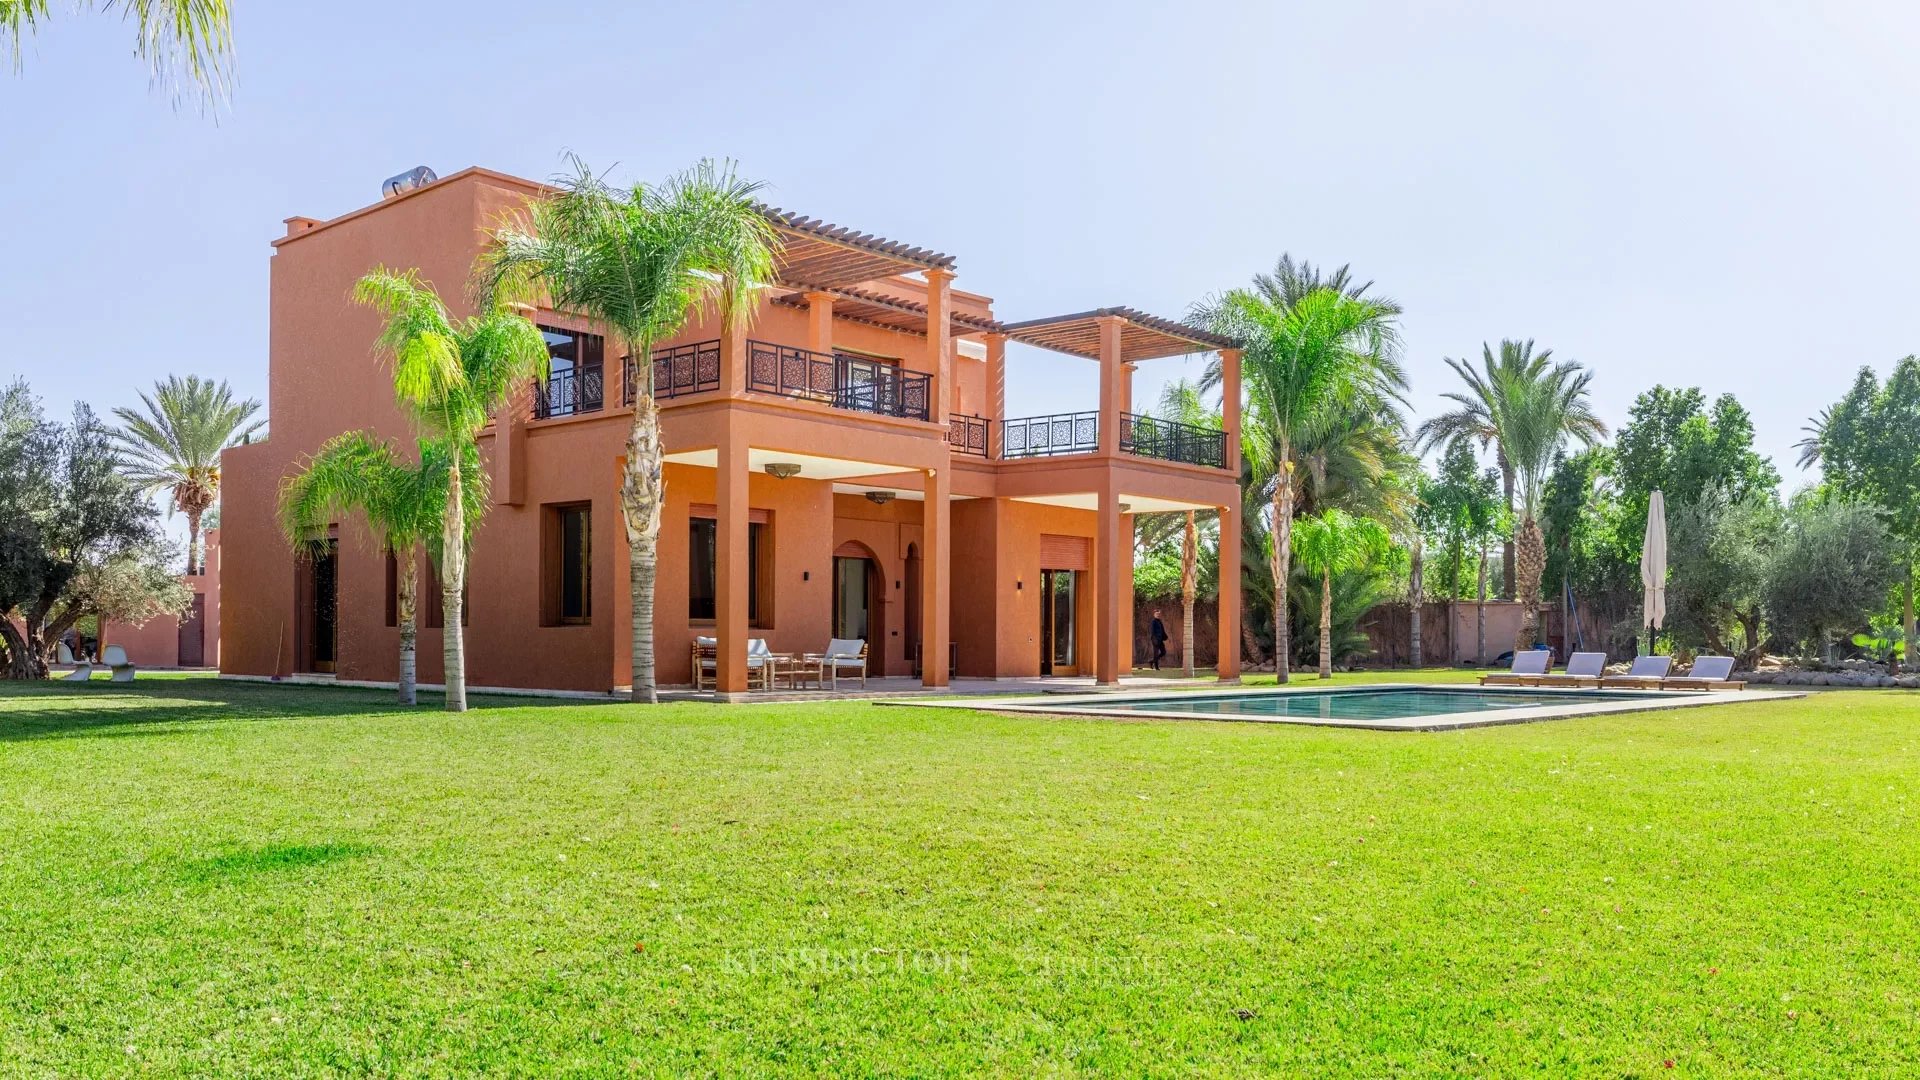 Villa Nashira in Marrakech, Morocco